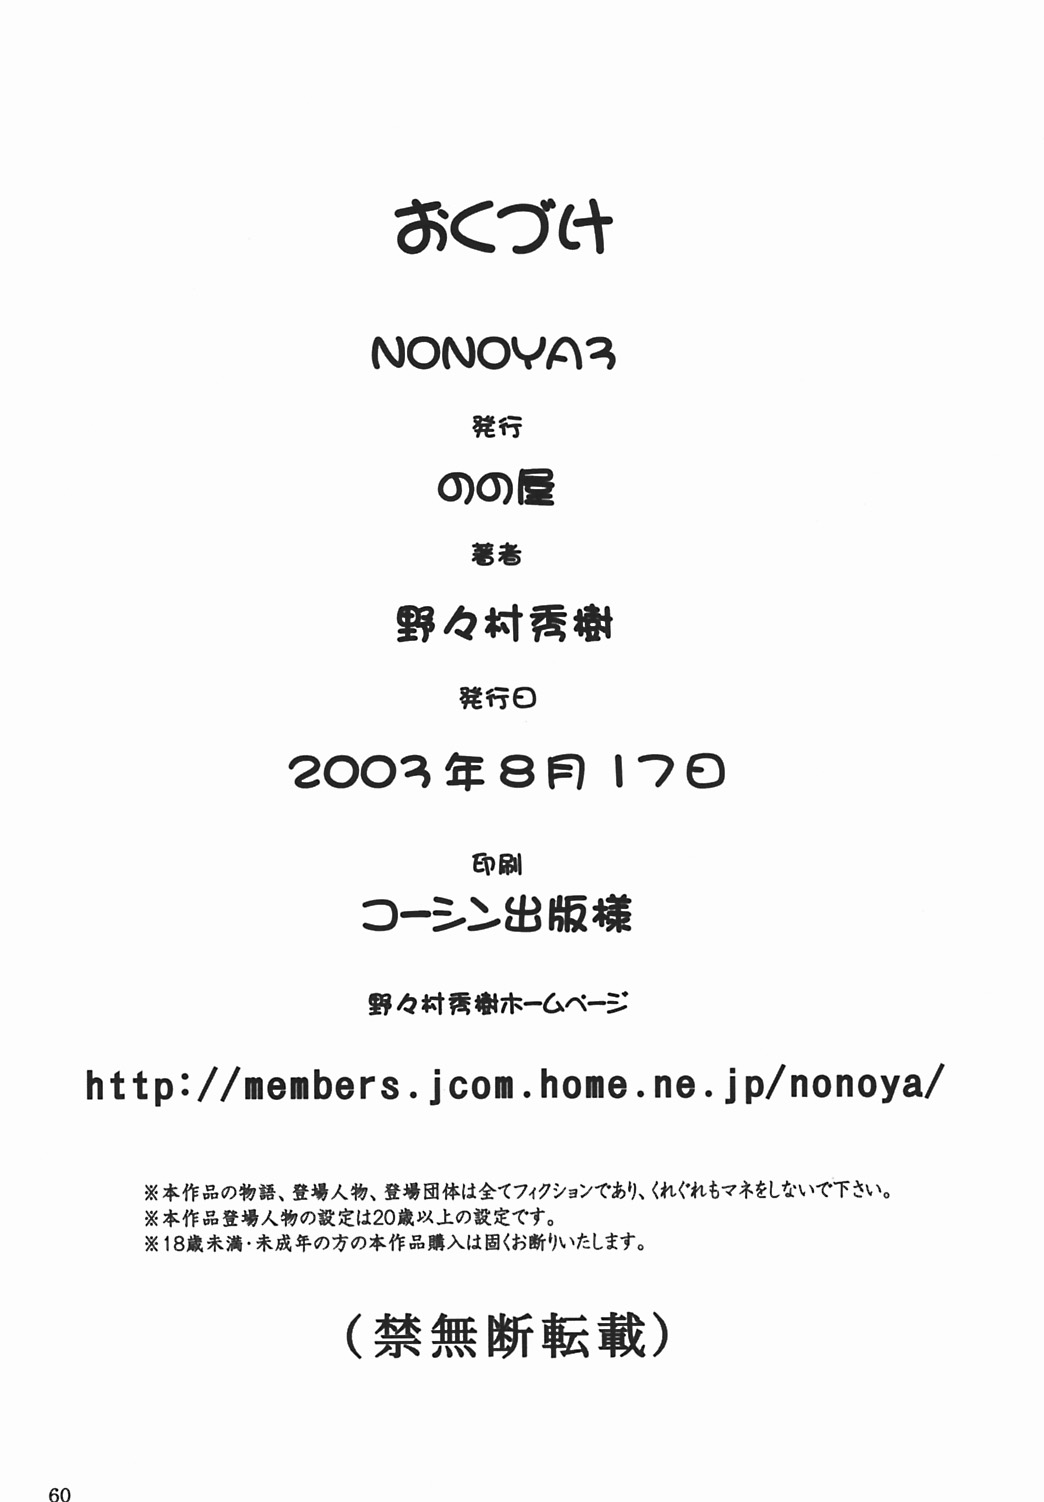 [Hideki Nonomura] Nonoya 3 